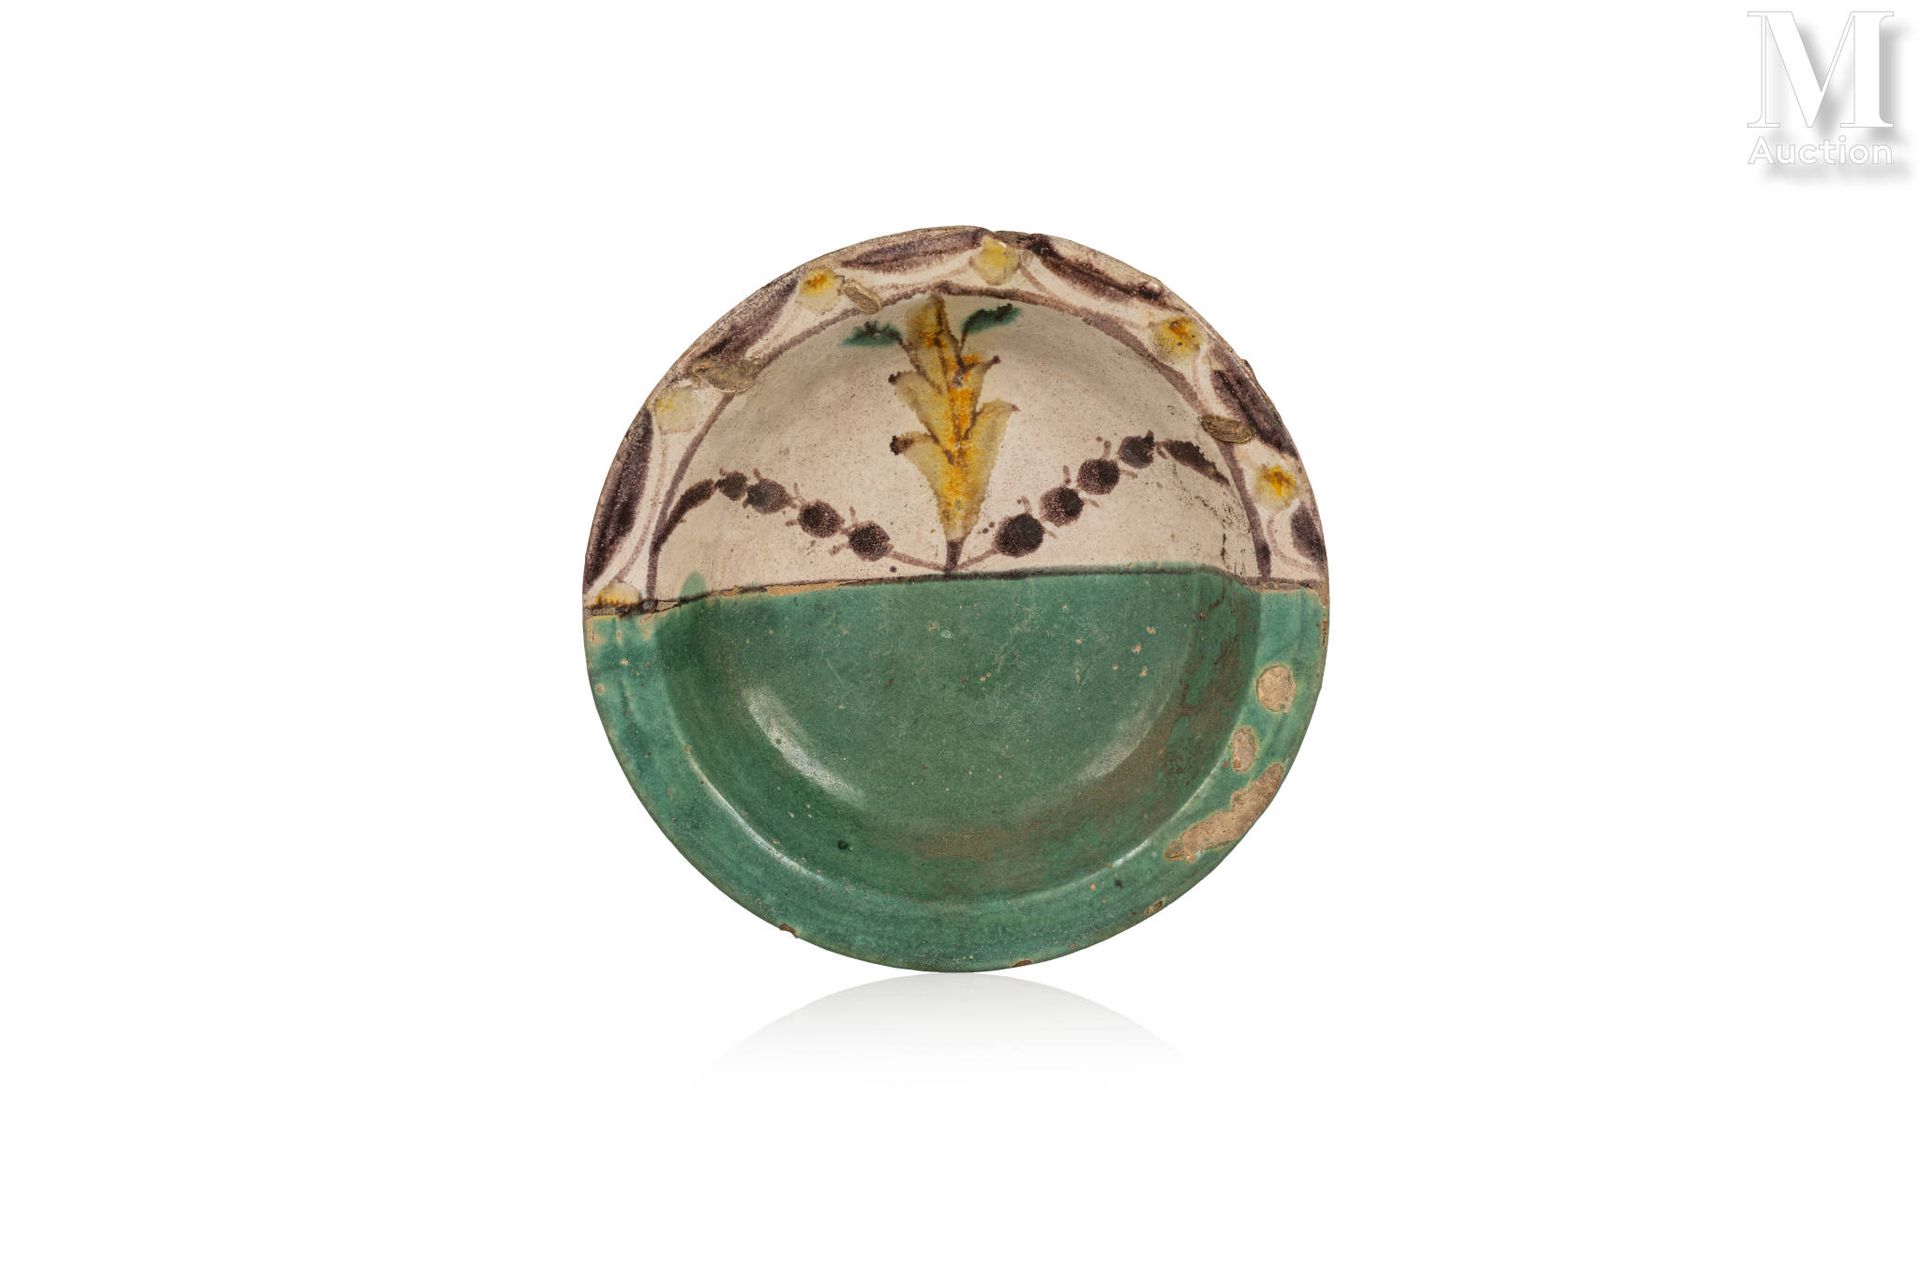 Assiette qallaline 突尼斯，突尼斯，19世纪末。

乳白色背景的绿色和棕色双色陶瓷盘。盘子的一半是平坦的绿色背景，而另一半是植物和赭石的装饰。&hellip;